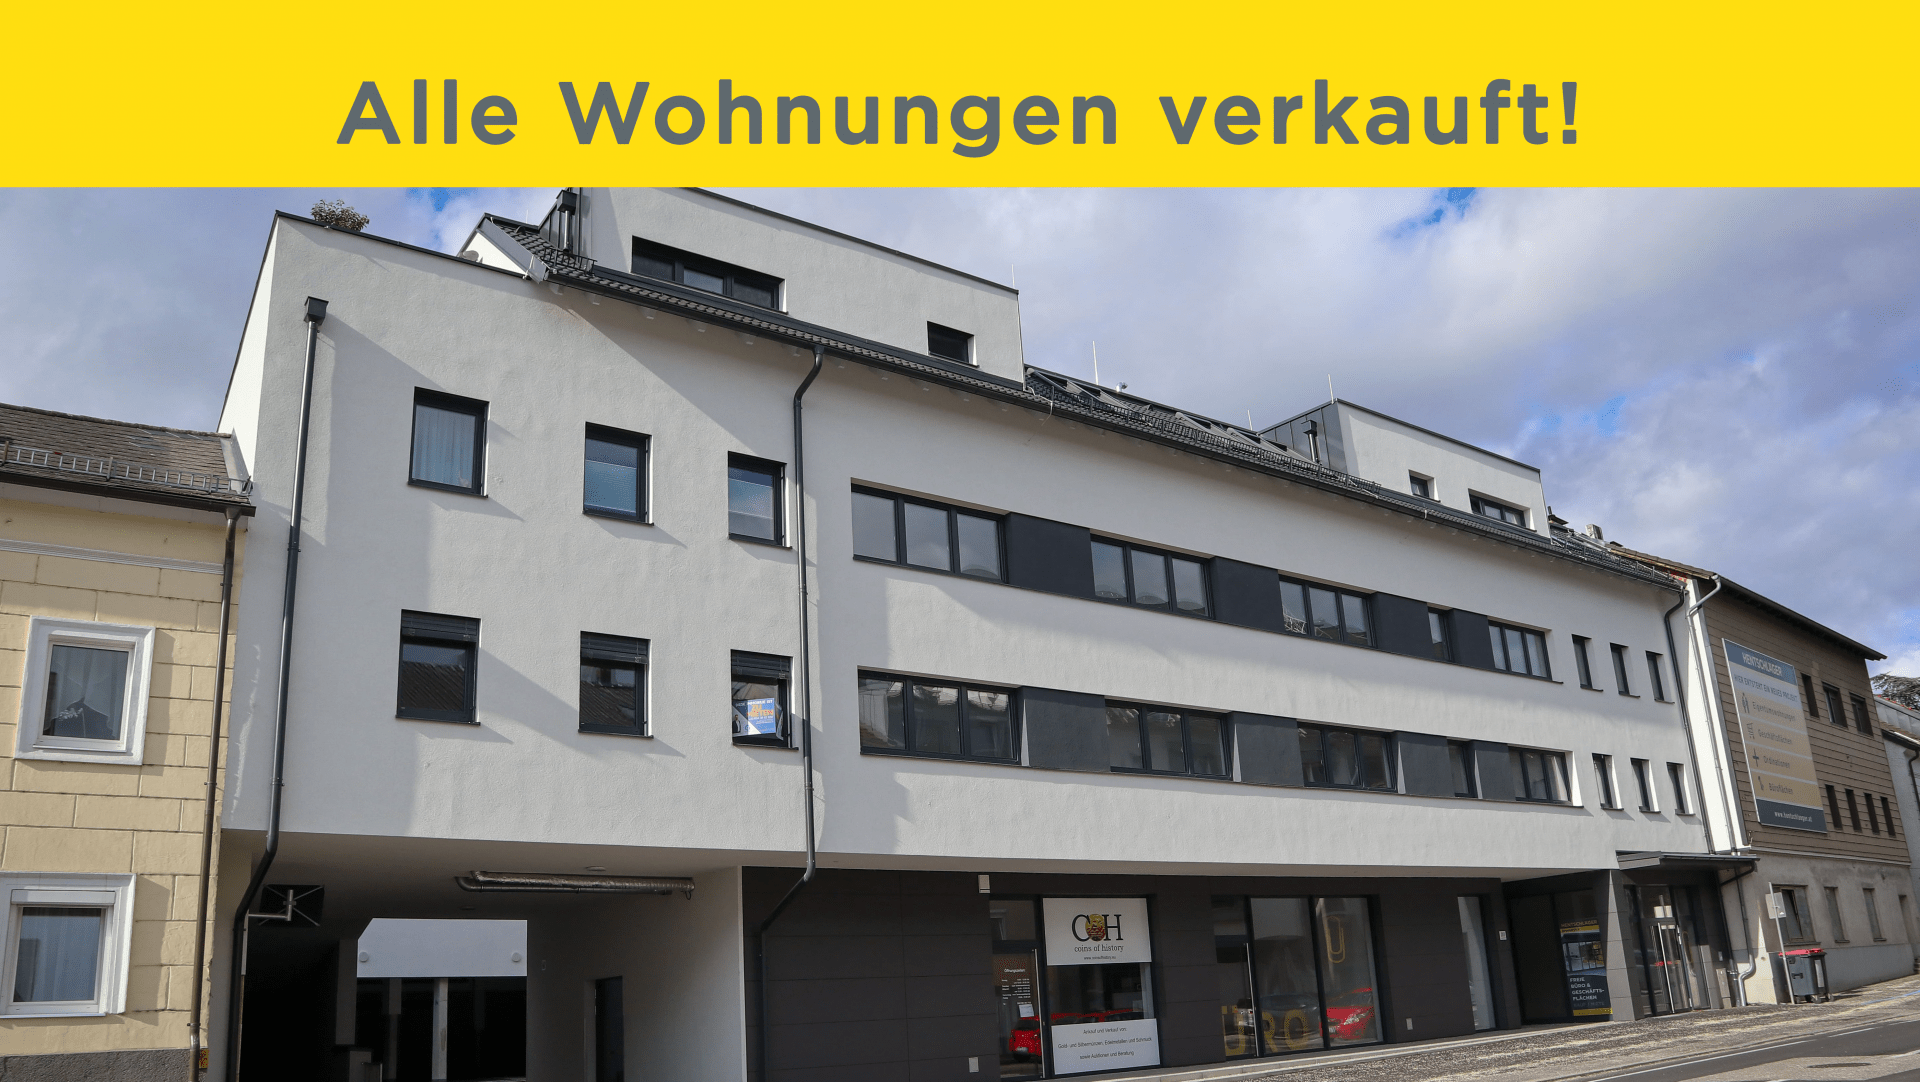 Eigentumswohnungen & Büros in der Leonfeldner Straße - Hentschläger Immobilien GmbH - Toplage - Wohnen und Arbeiten in Linz/Urfahr